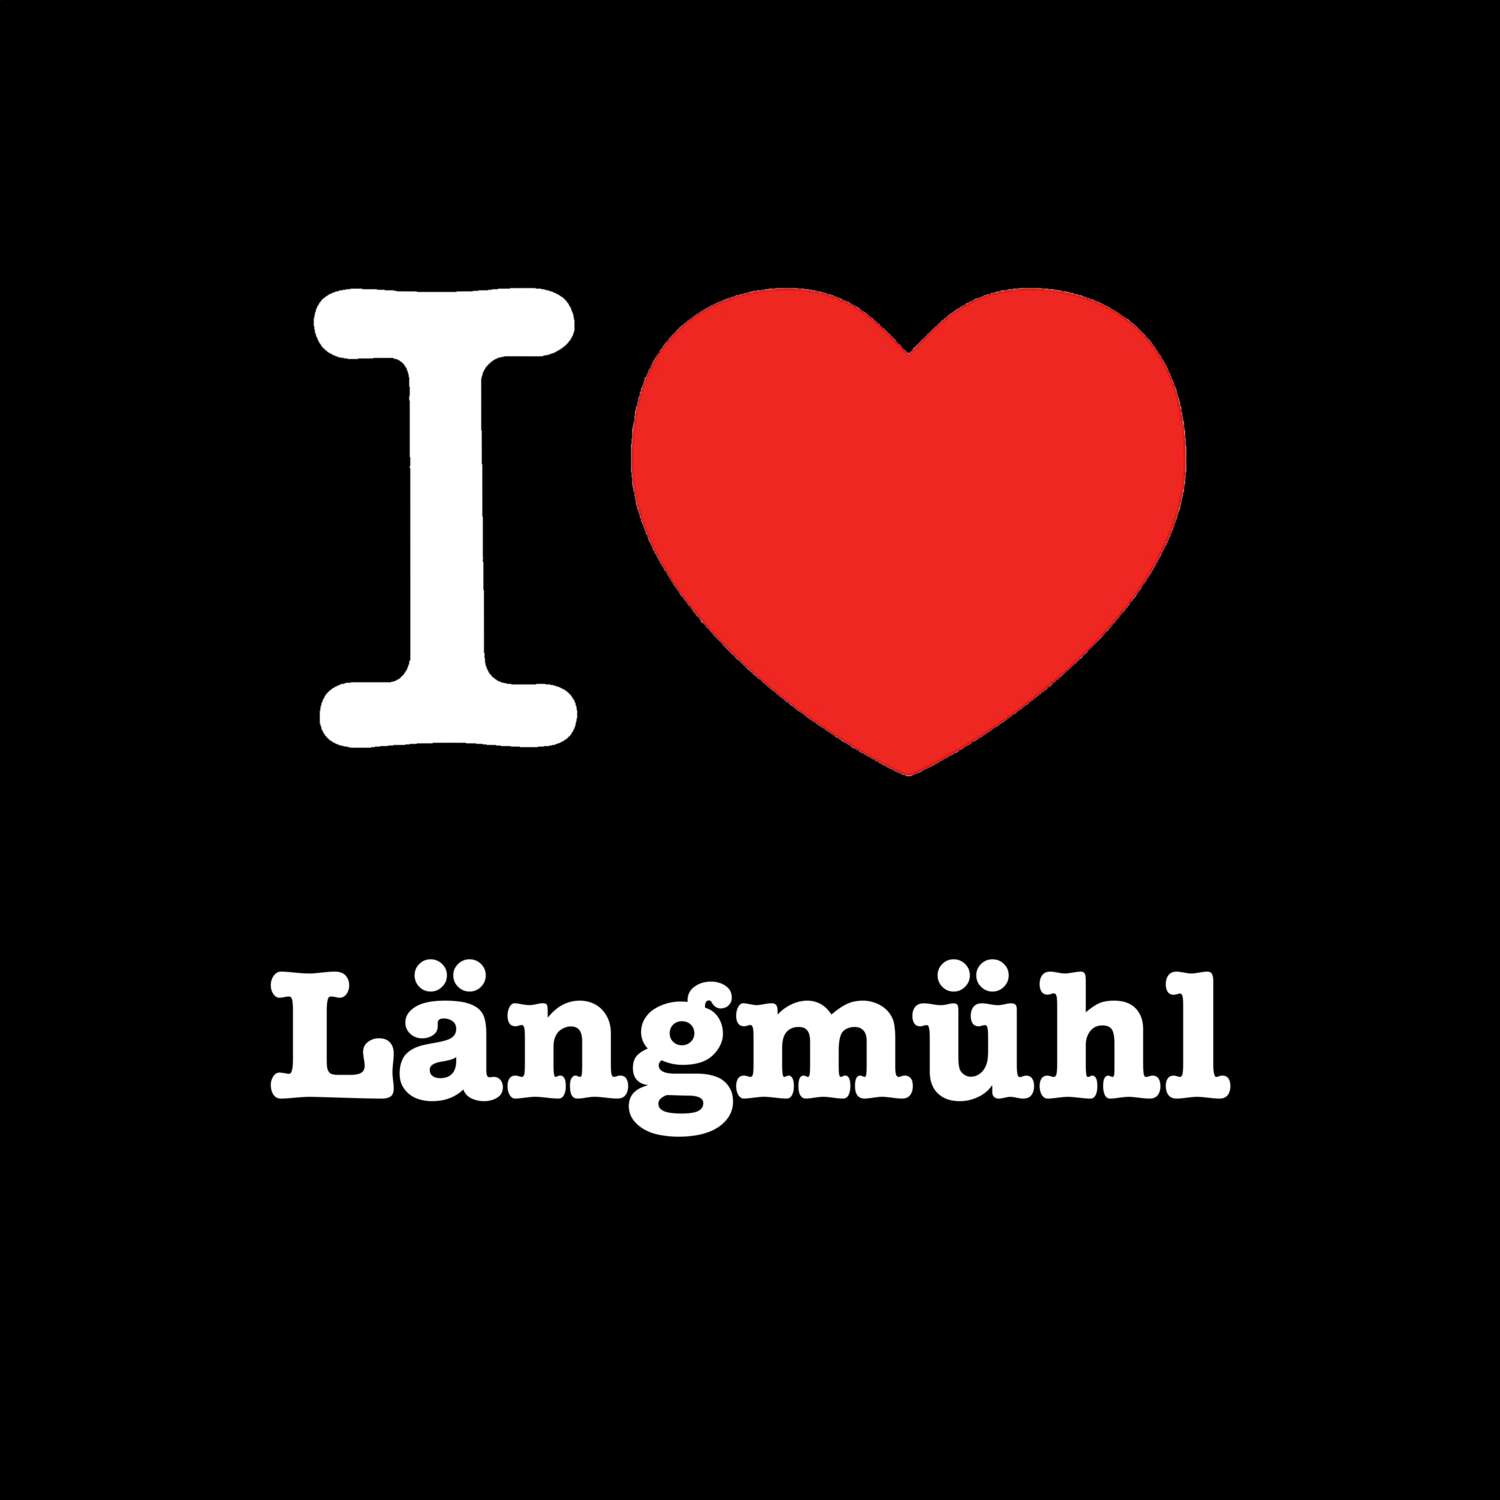 Längmühl T-Shirt »I love«